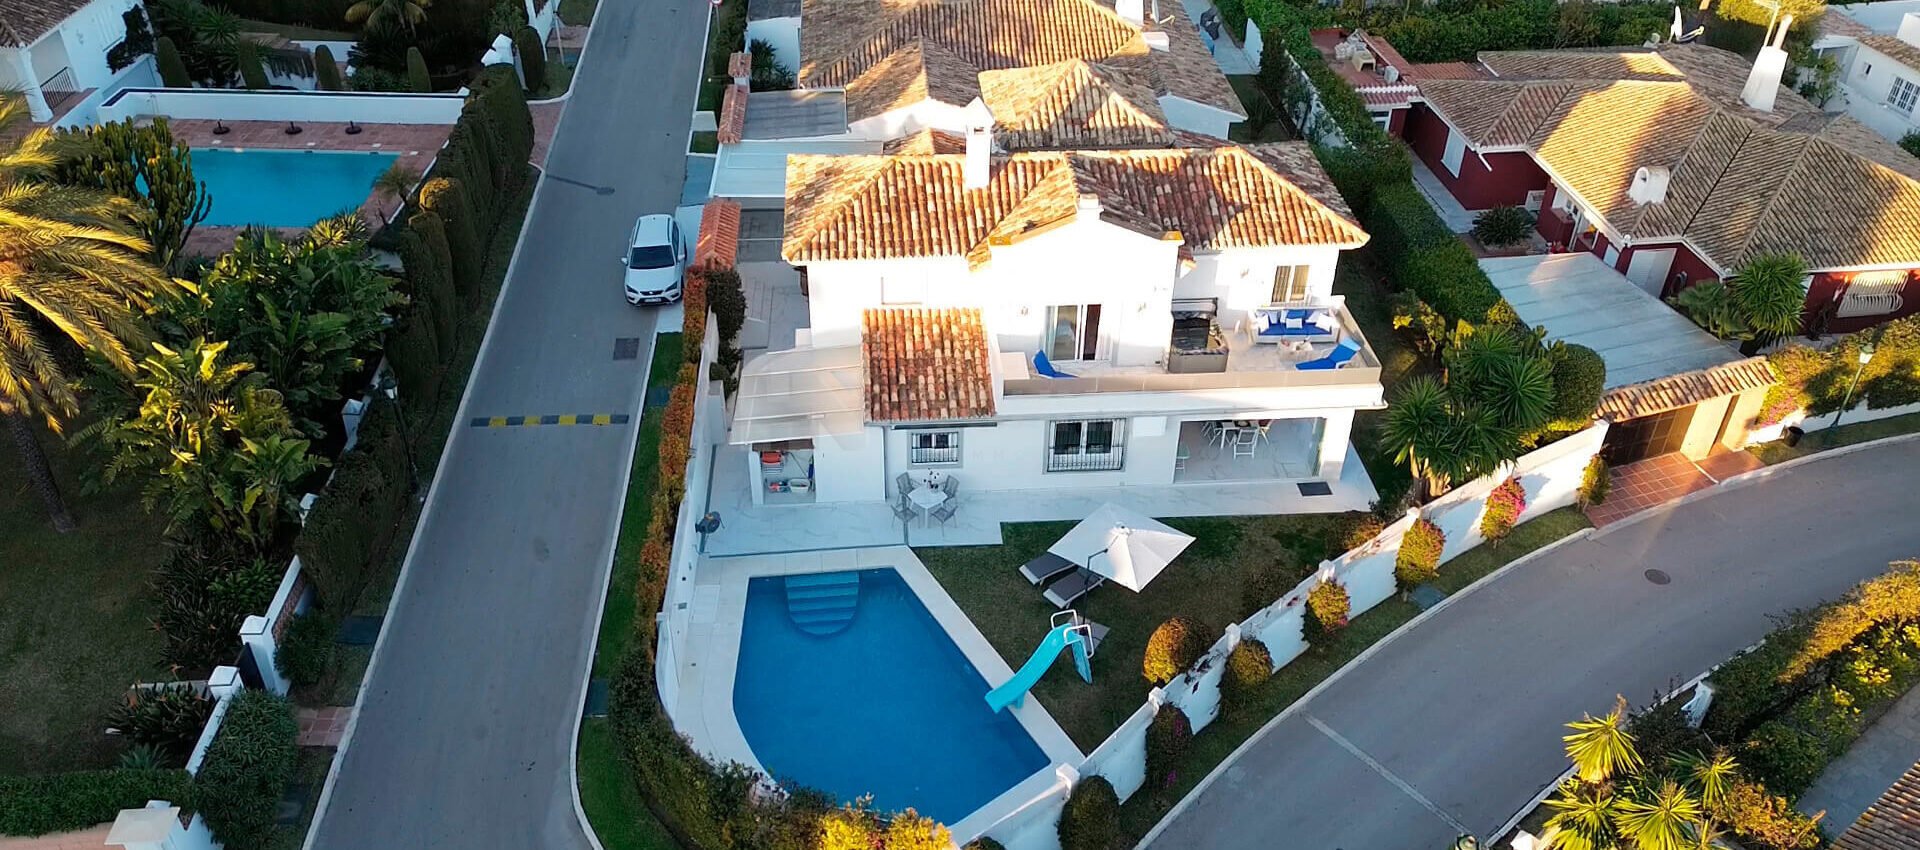 Villa en una de las zonas más privilegiadas de Marbella al lado de la playa